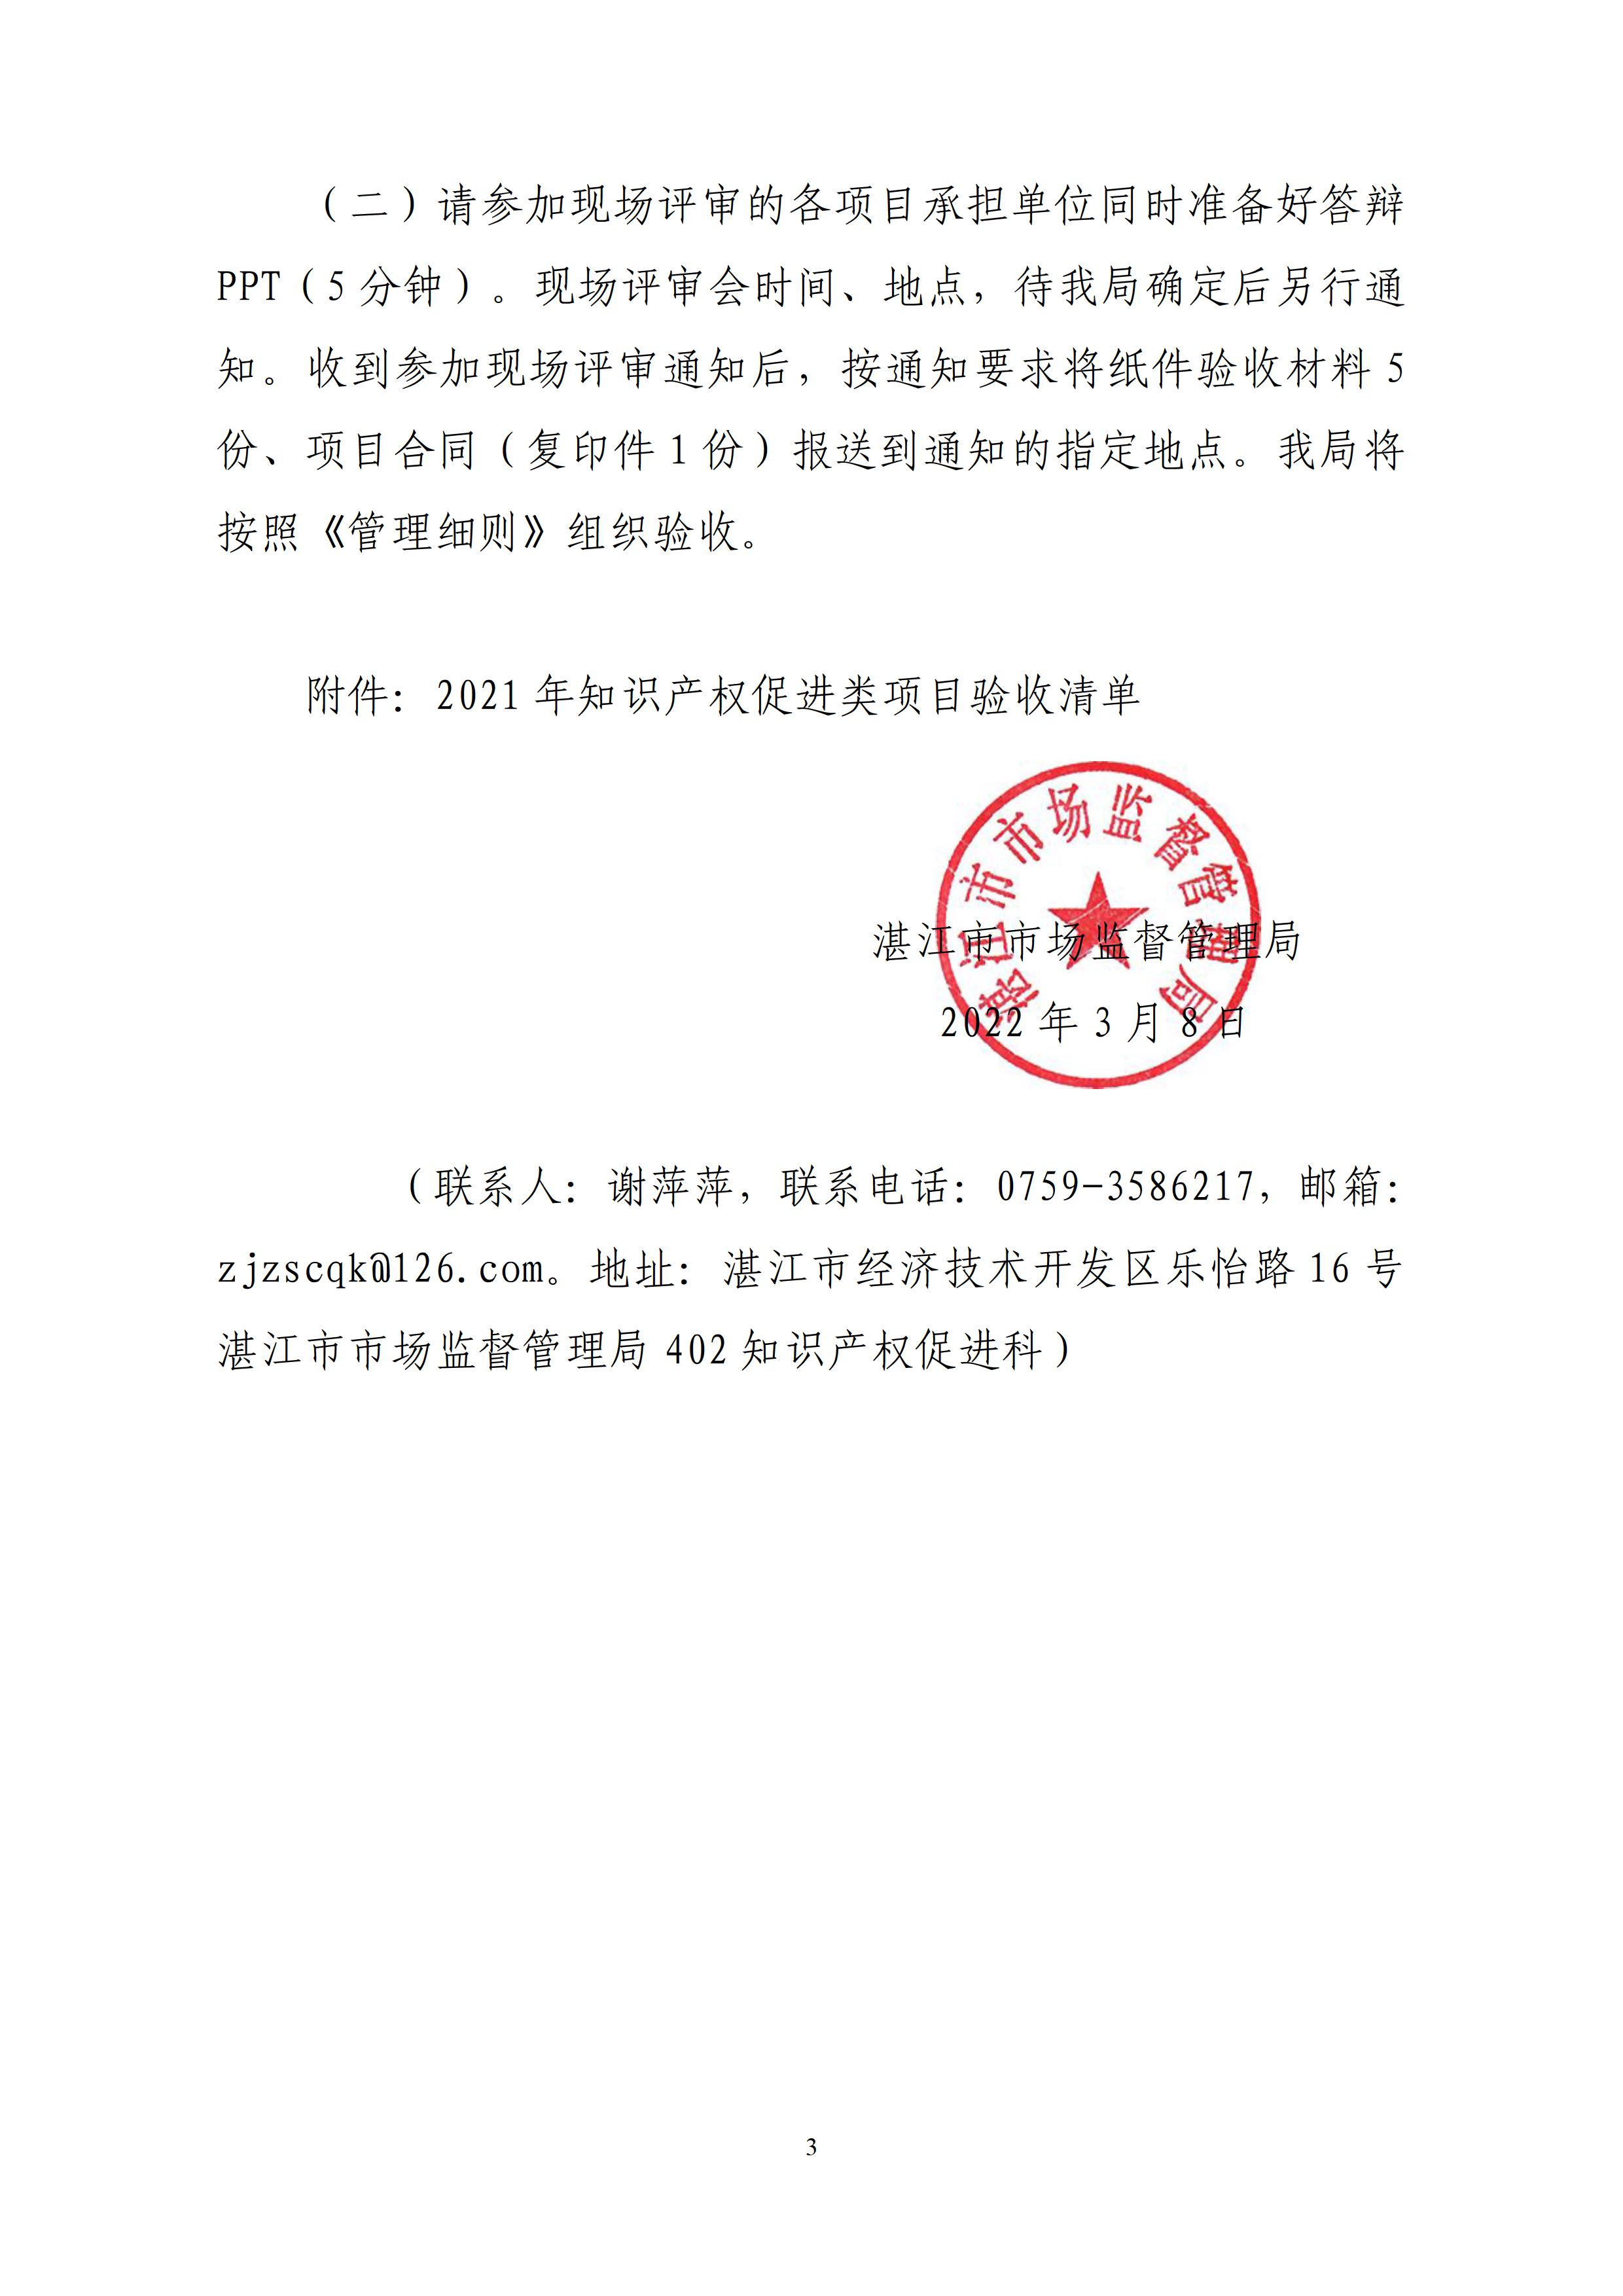 湛江市市场监督管理局关于开展2021年知识产权促进类项目验收工作的通知 - 0003.jpg